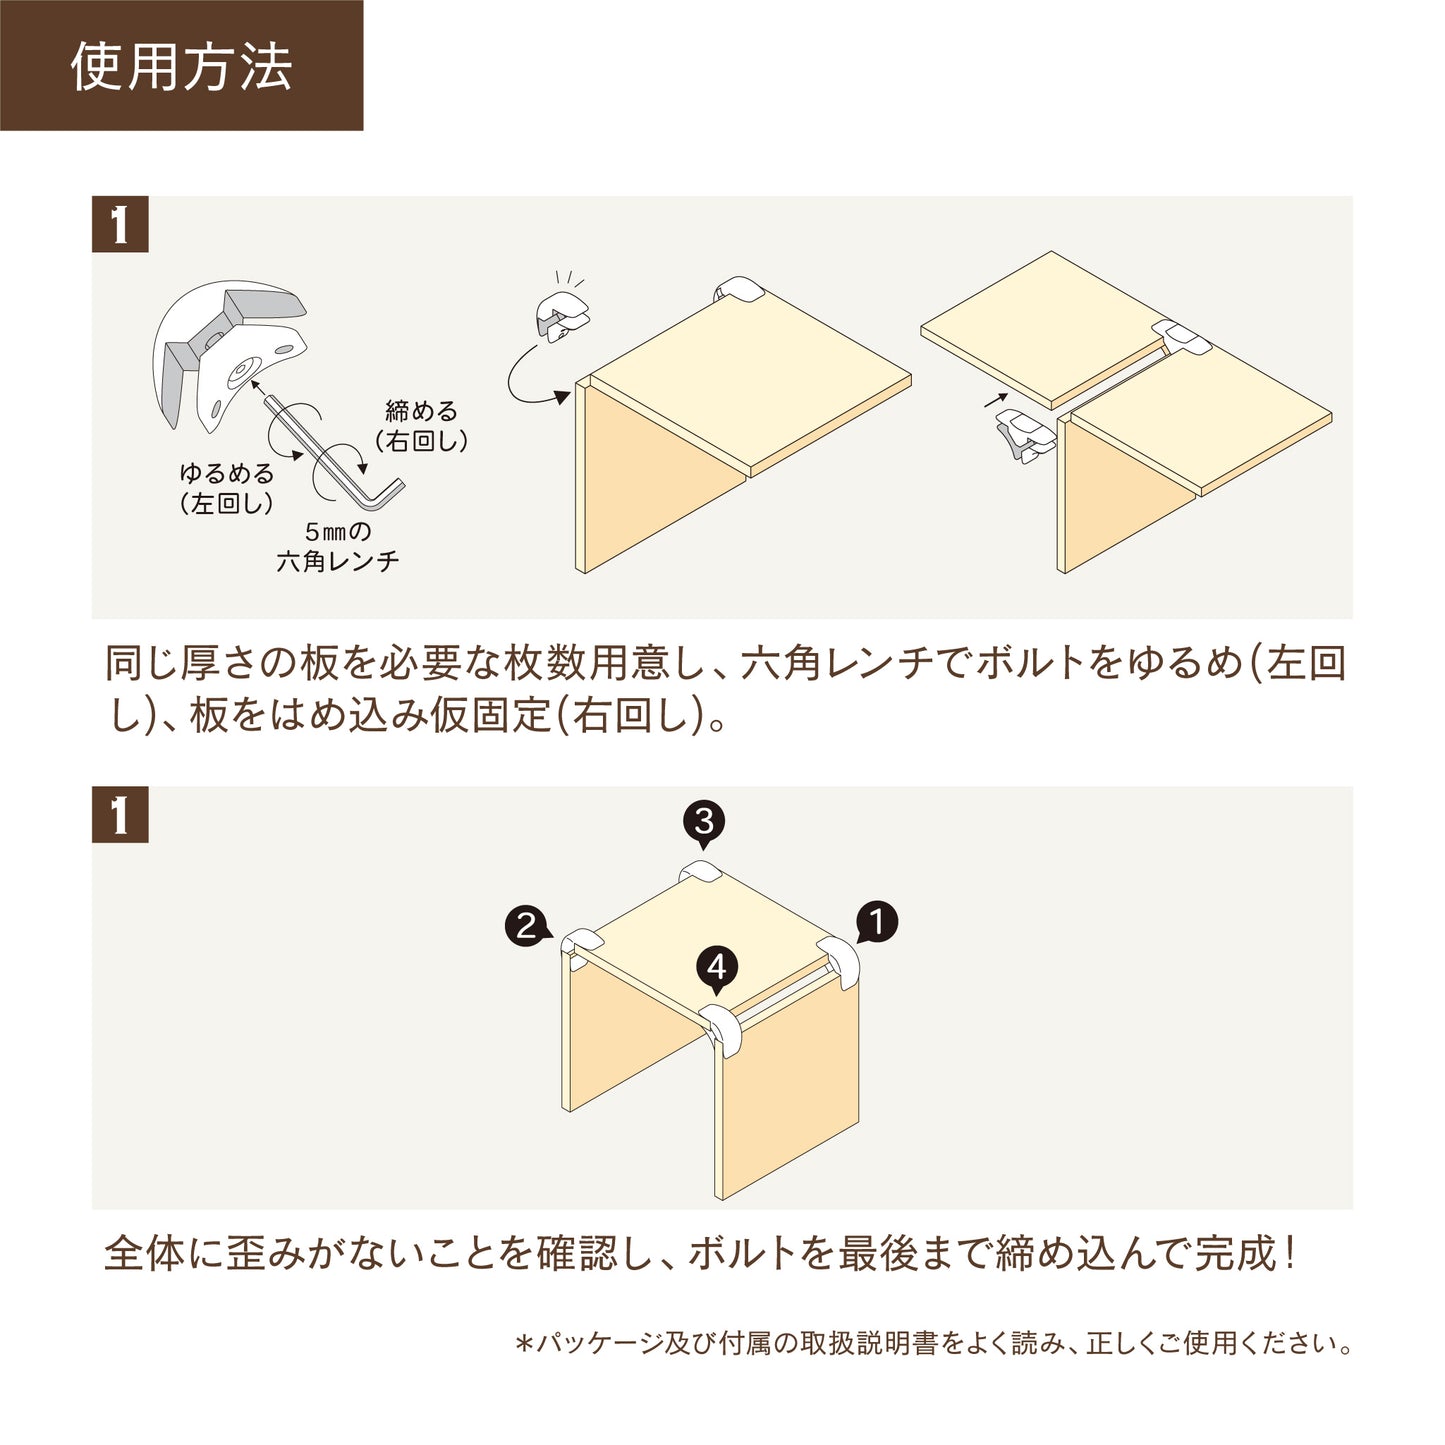 【ハグブロック公式ショップ】はさんで固定するだけで簡単にオリジナル家具が作れるアイテム。アウトドアにも。 ハグブロック L型（4個セット）